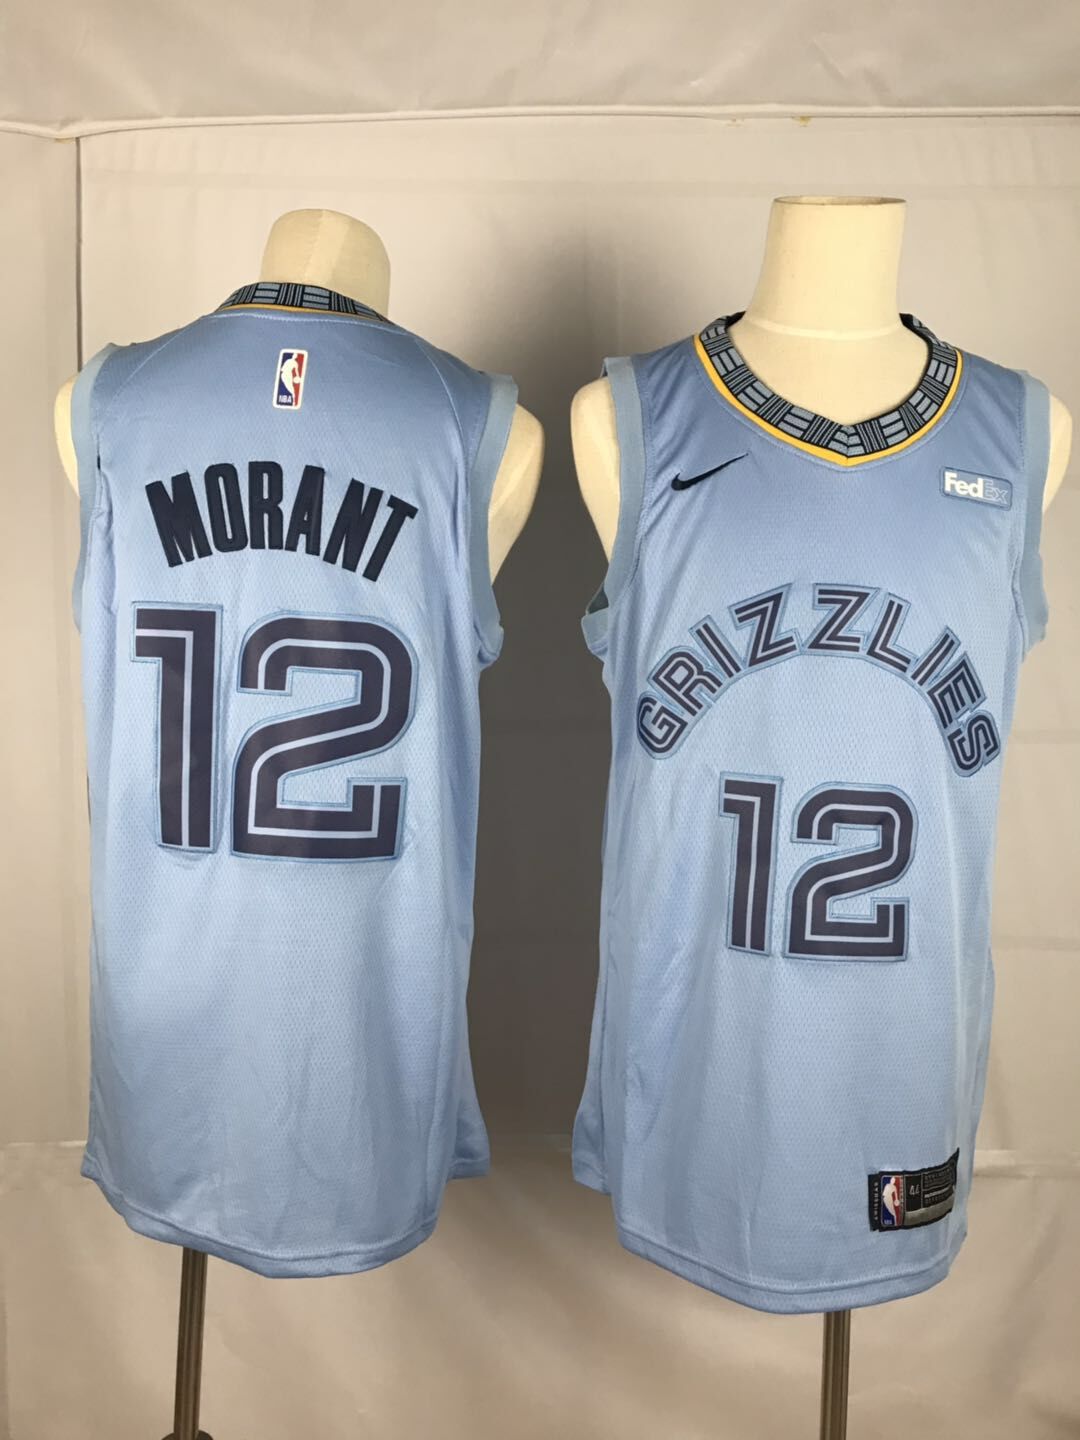 Men Memphis Grizzlies #12 Morant Light Blue Nike NBA Jerseys->memphis grizzlies->NBA Jersey